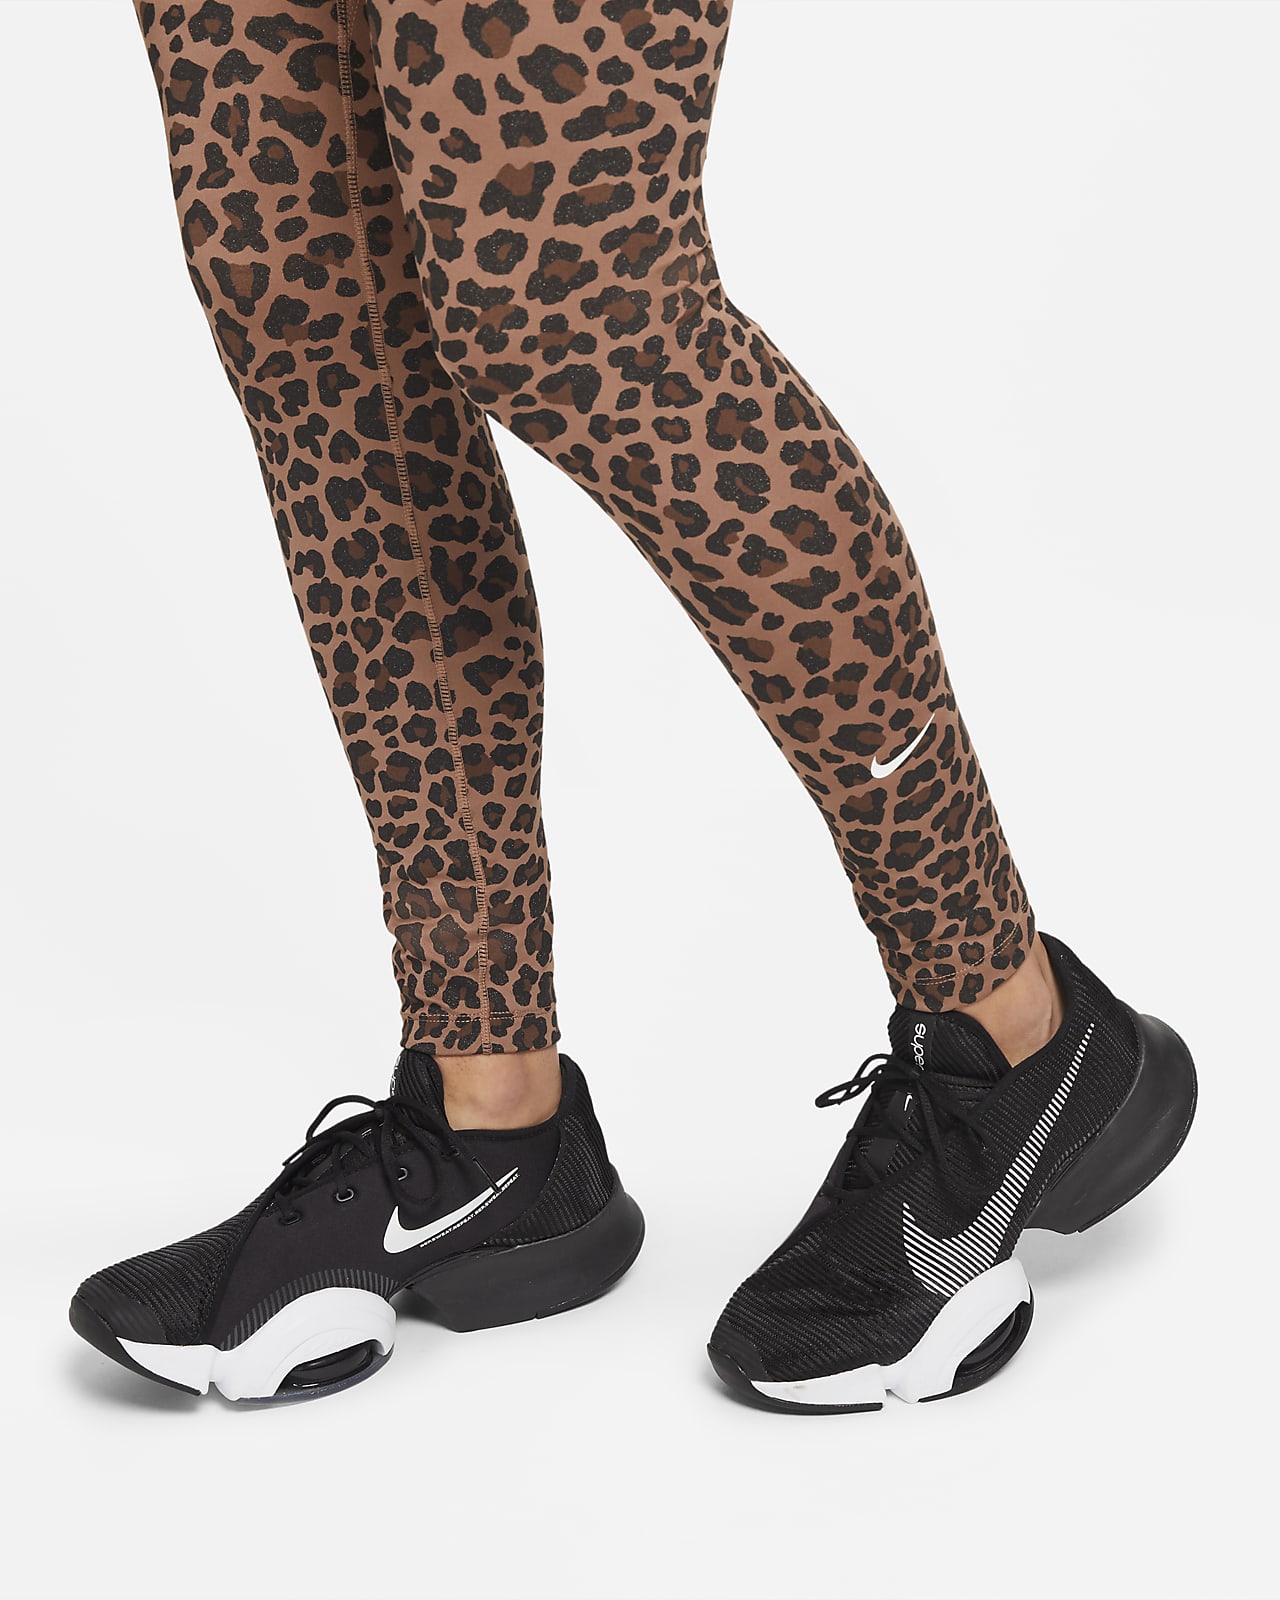 Mallas leopardo mujer Nike Primavera